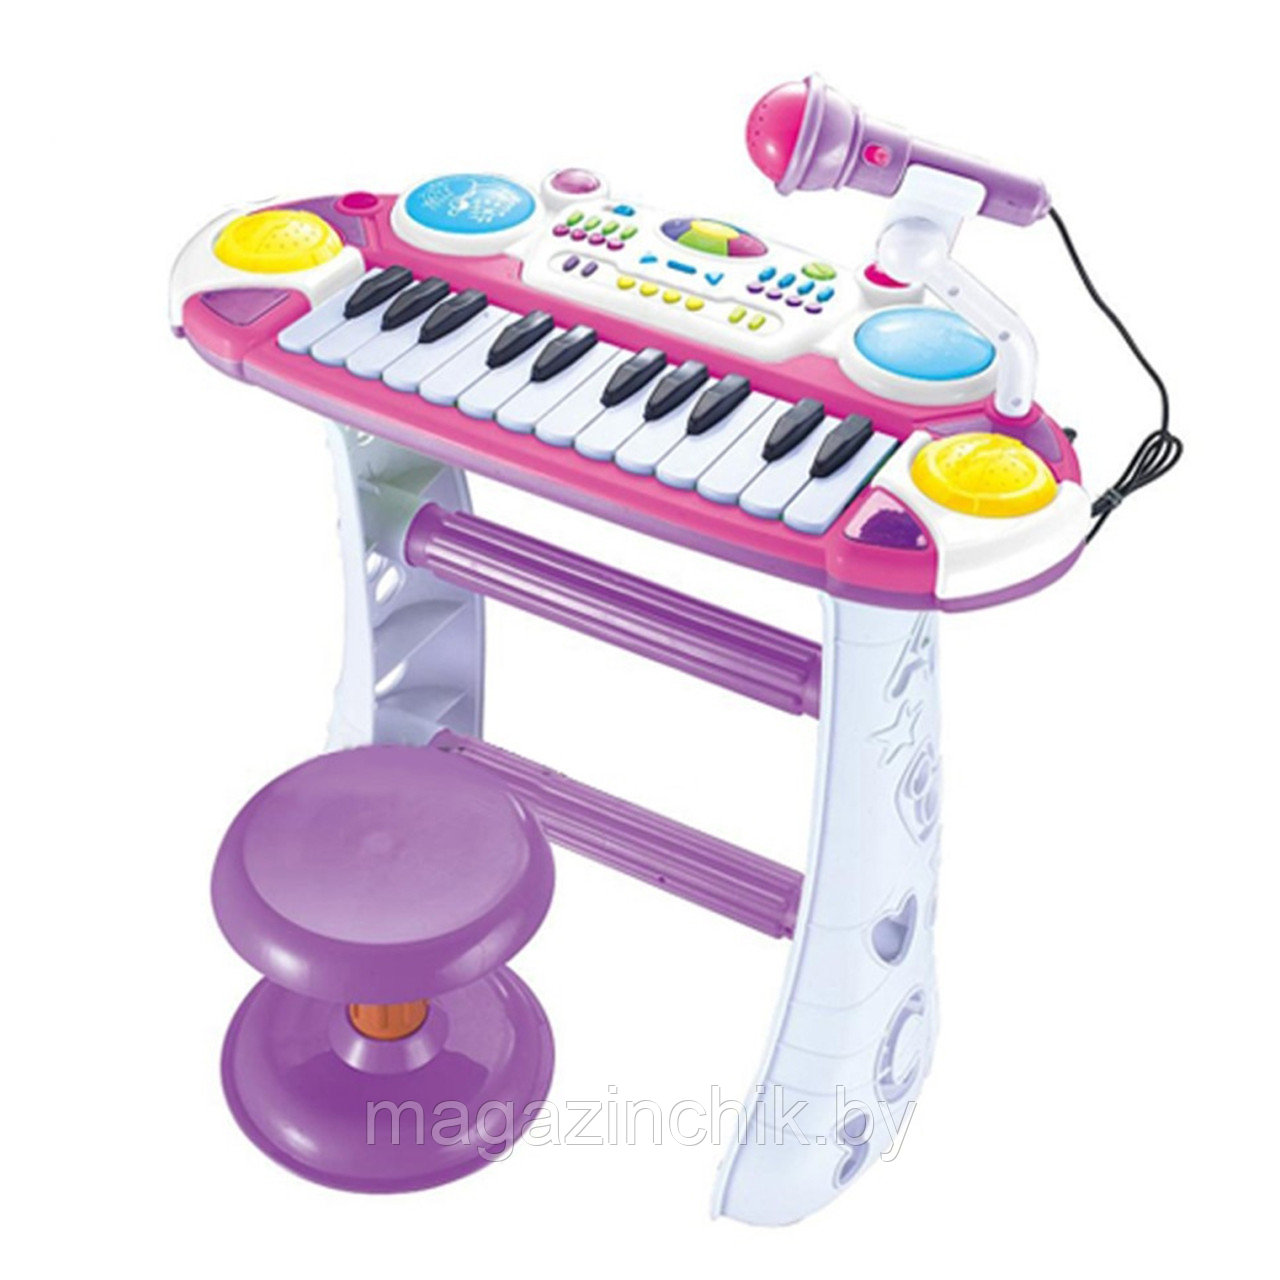 Детский синтезатор (пианино) Joy Toy 7235 с микрофоном, стульчиком, светом и звуком, сиреневый